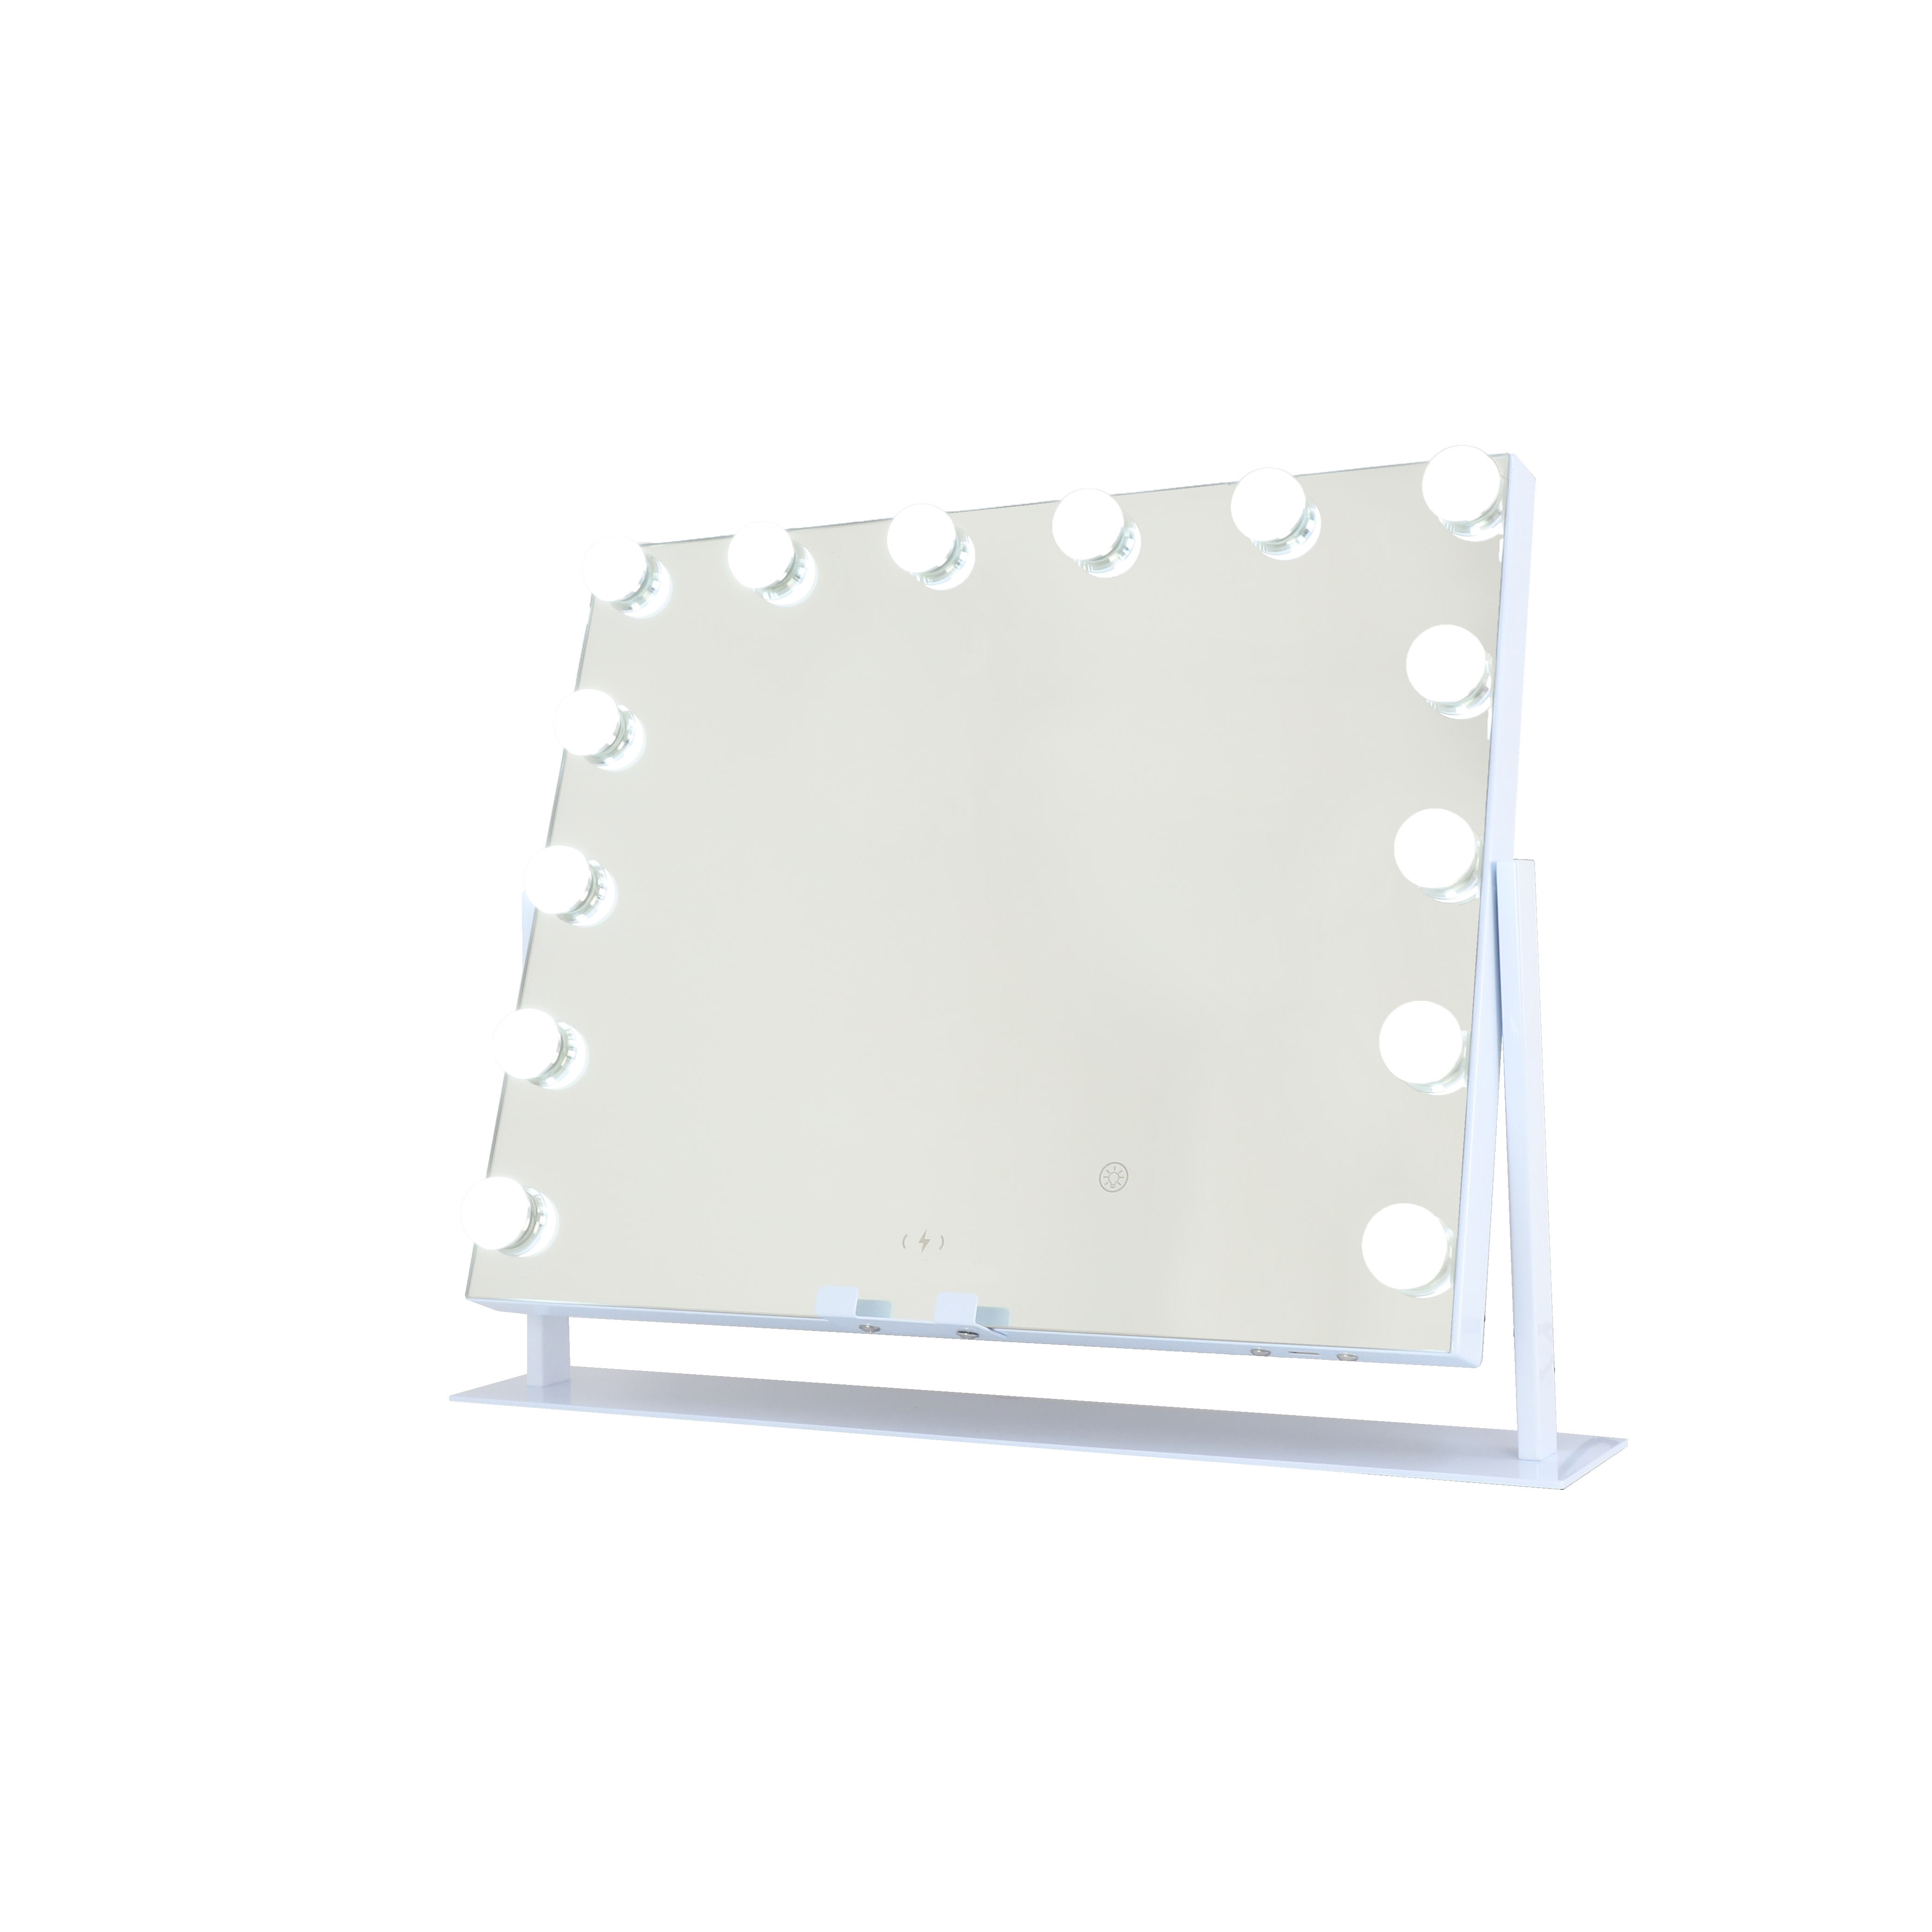 Профессиональное настольное зеркало с подсветкой FENCHILIN DC117-20, 50х40 см